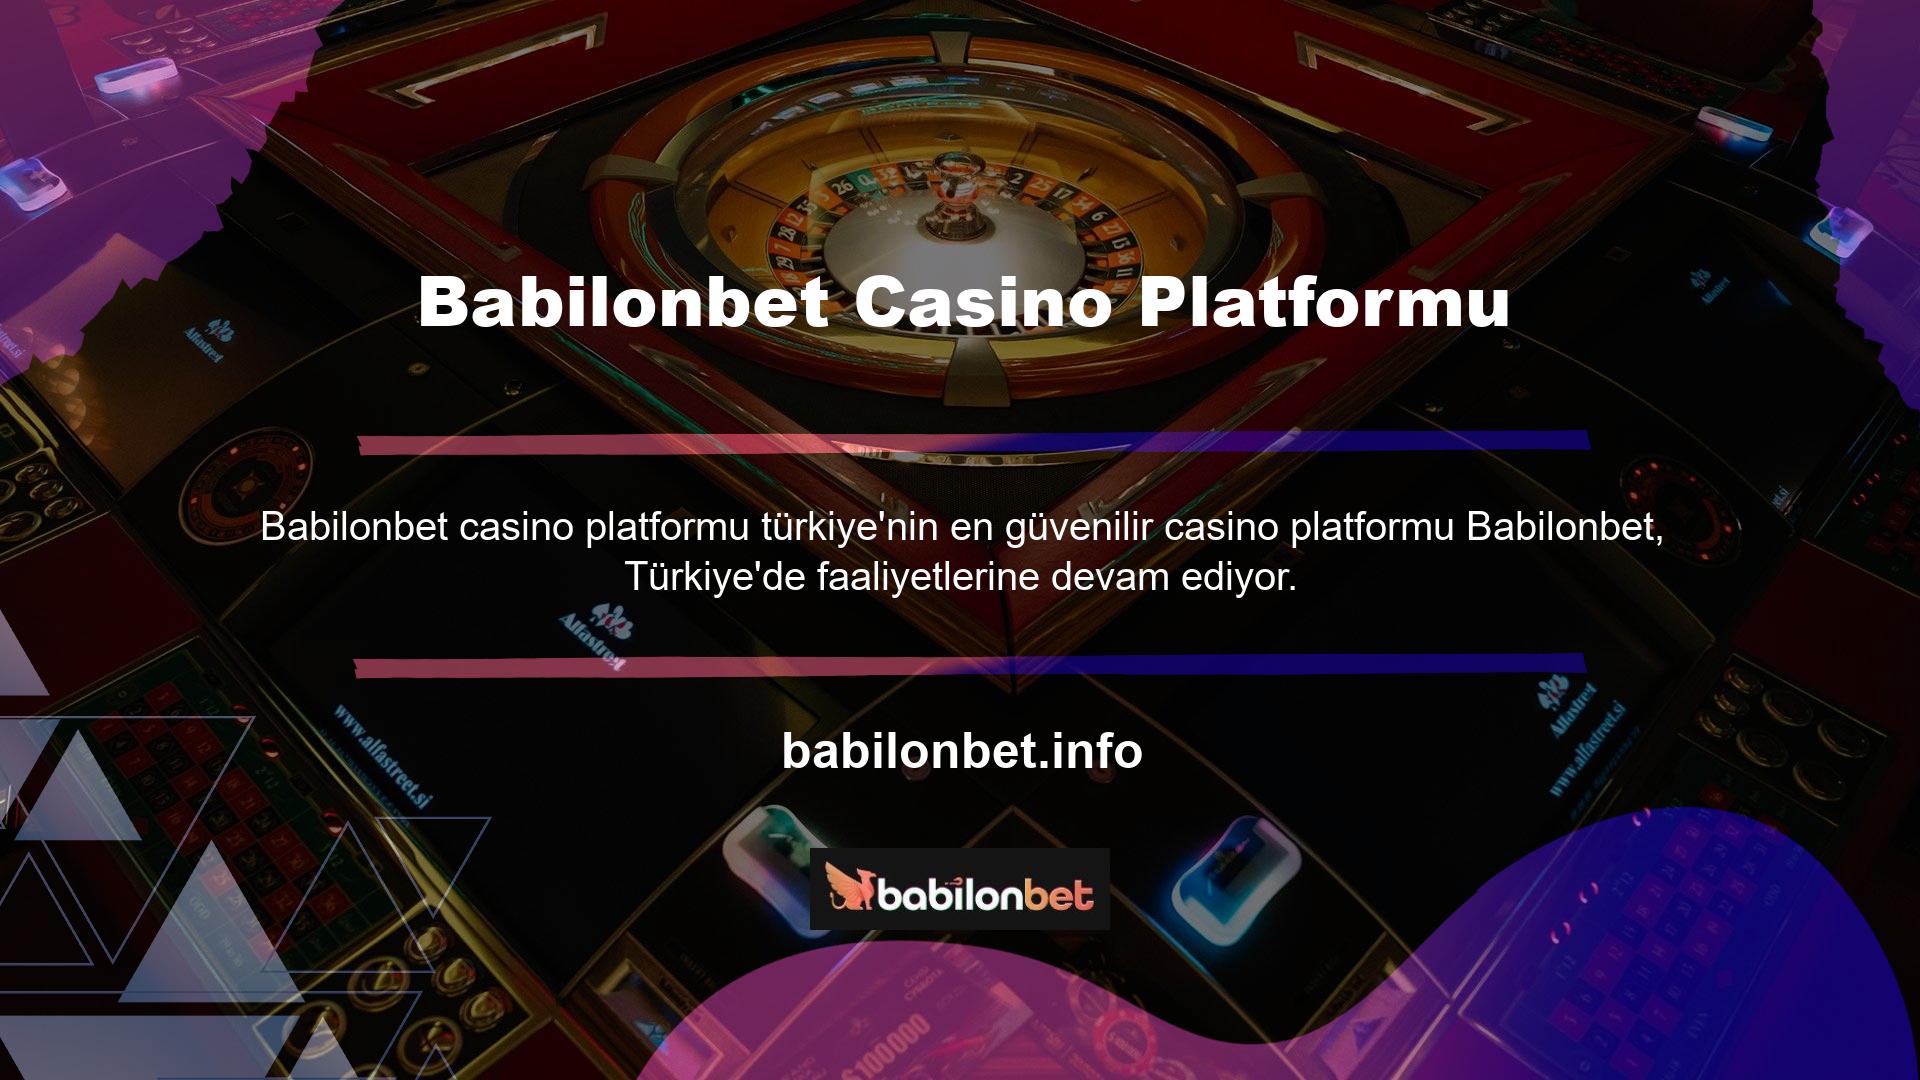 Kullanıcılarına sunduğu harika içeriklerden dolayı en karlı casino sitesidir